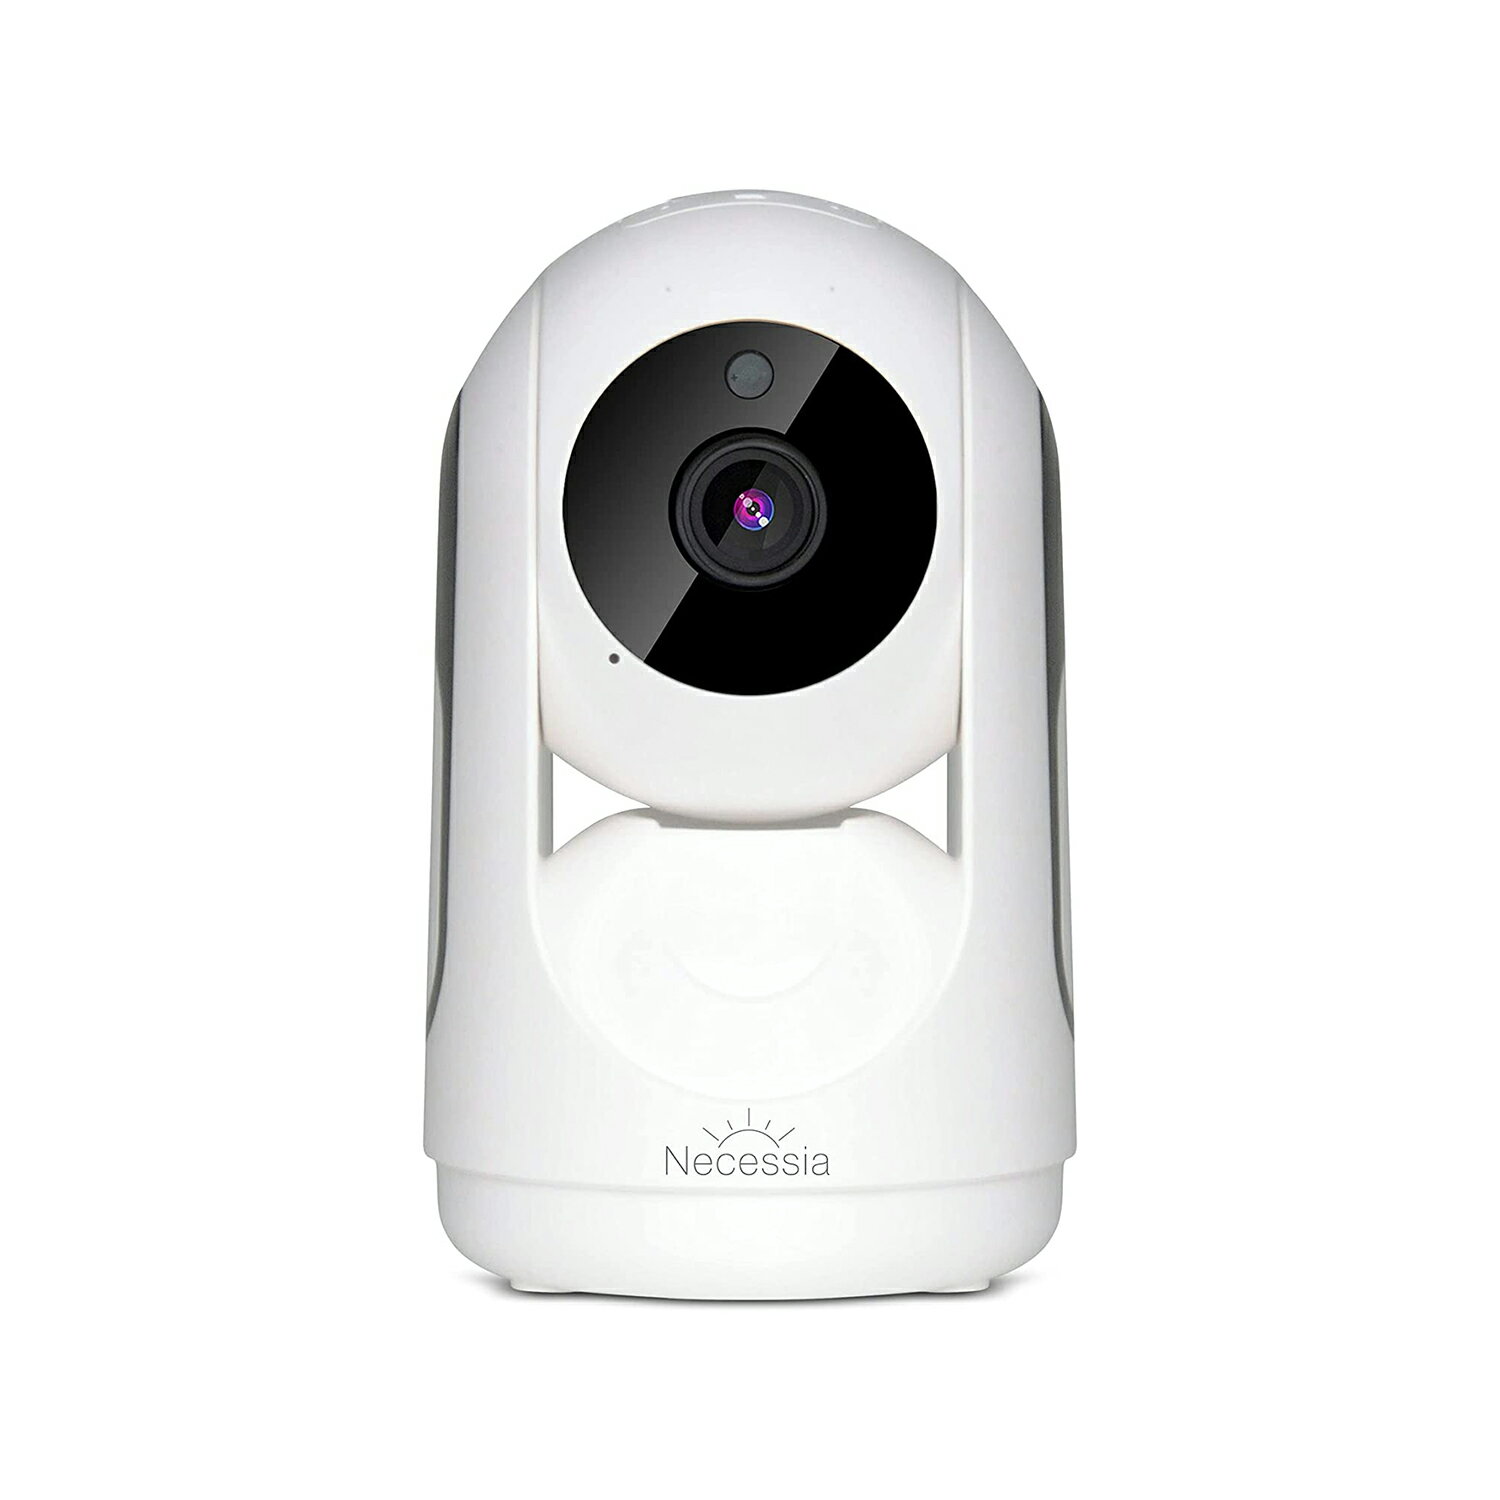 【送料無料】Necessia ネットワークカメラ Watch＆Talk 1080p フルHD WiFi 防犯カメラ/ペットカメラ/見守りカメラ/ベビーモニター スマホ連動 Google Home・Amazon Alexa対応 NIPC-001